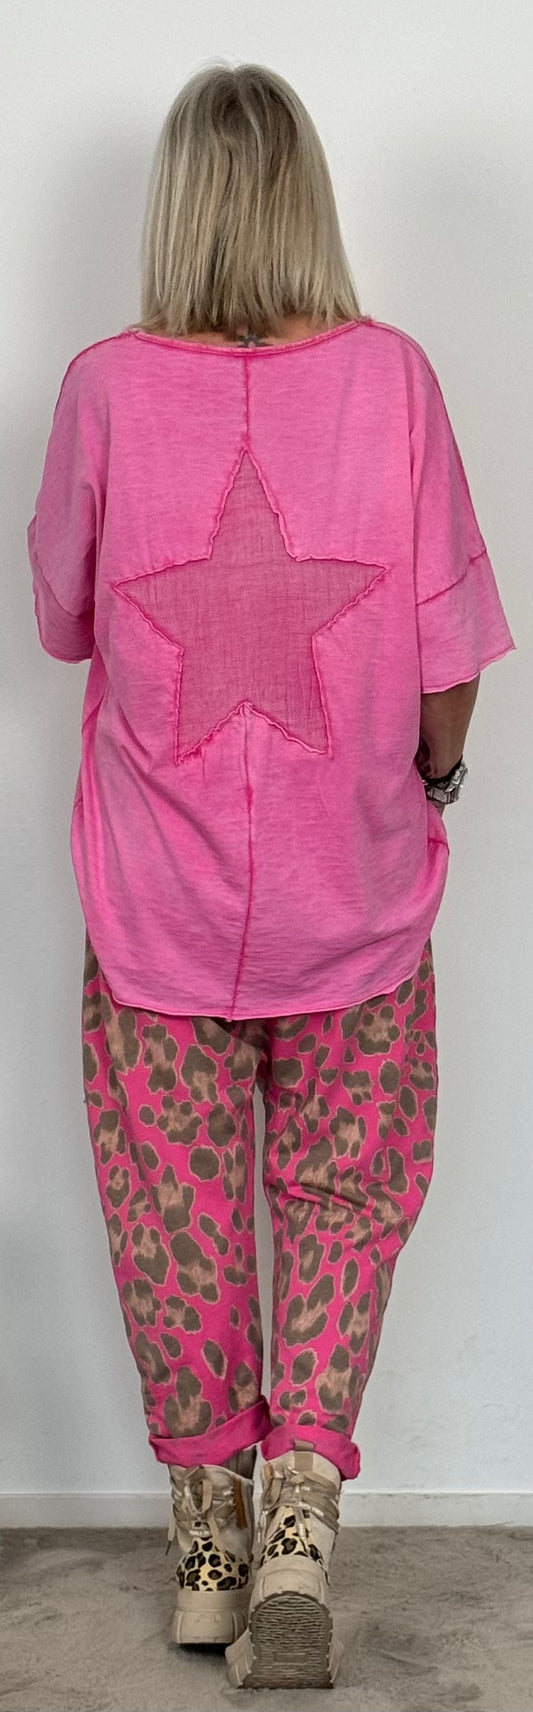 T-Shirt mit großem Stern auf dem Rücken "Jara" - pink